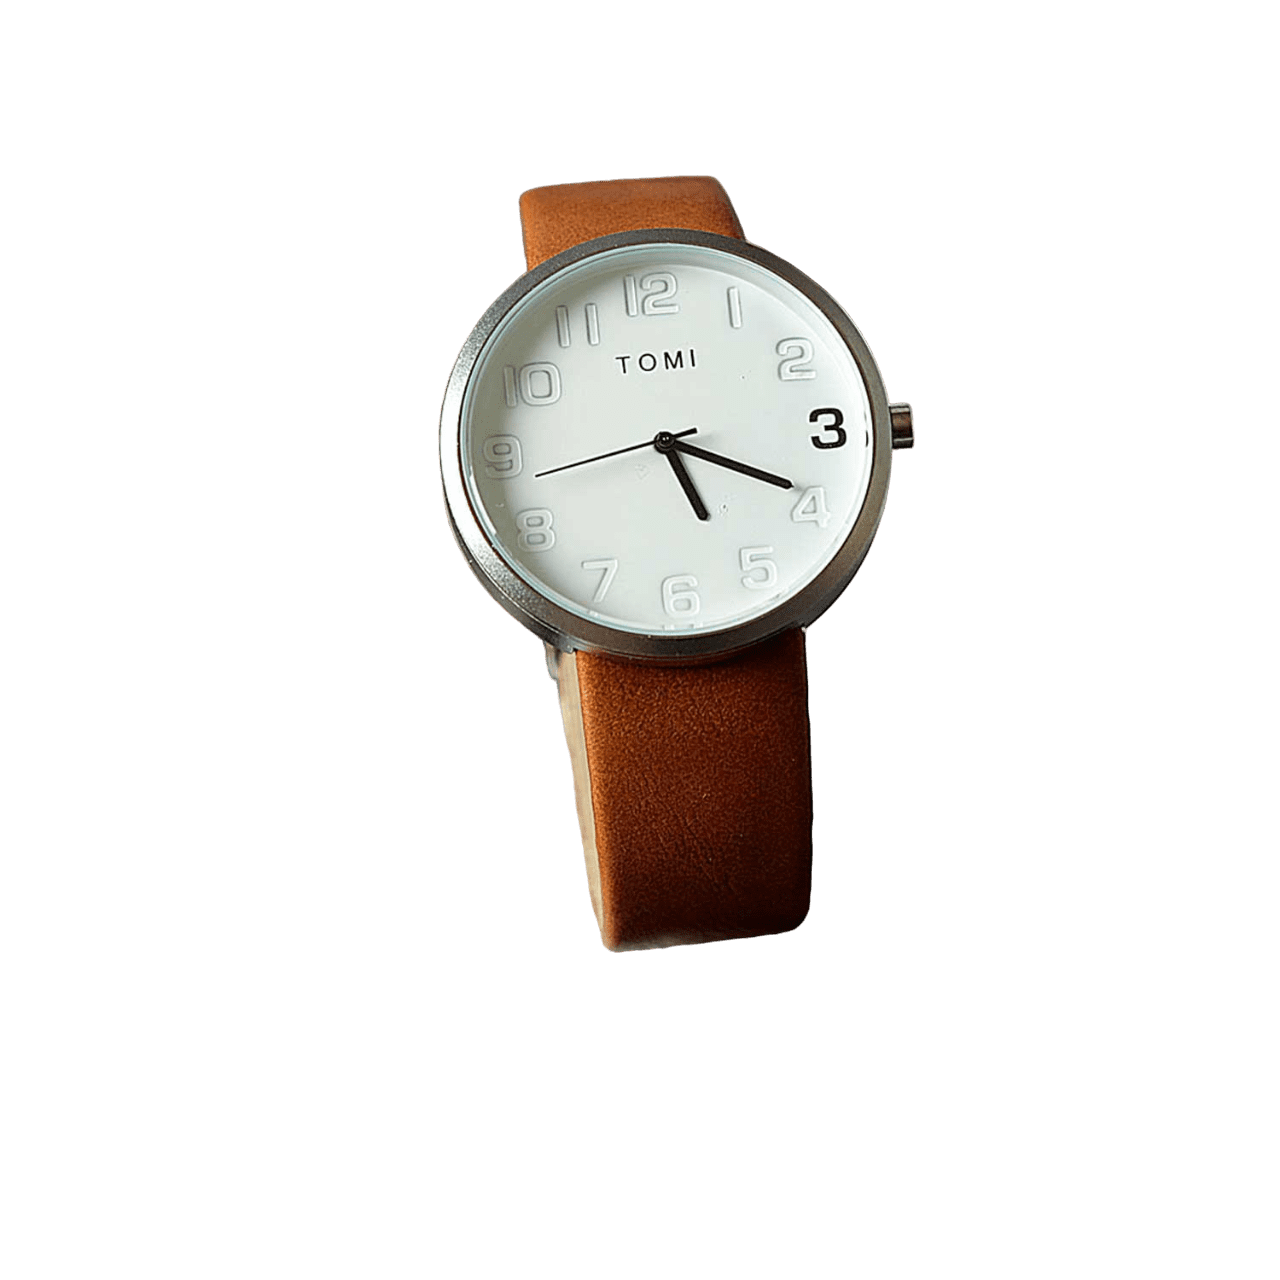 TOMI wristwatch model 1387